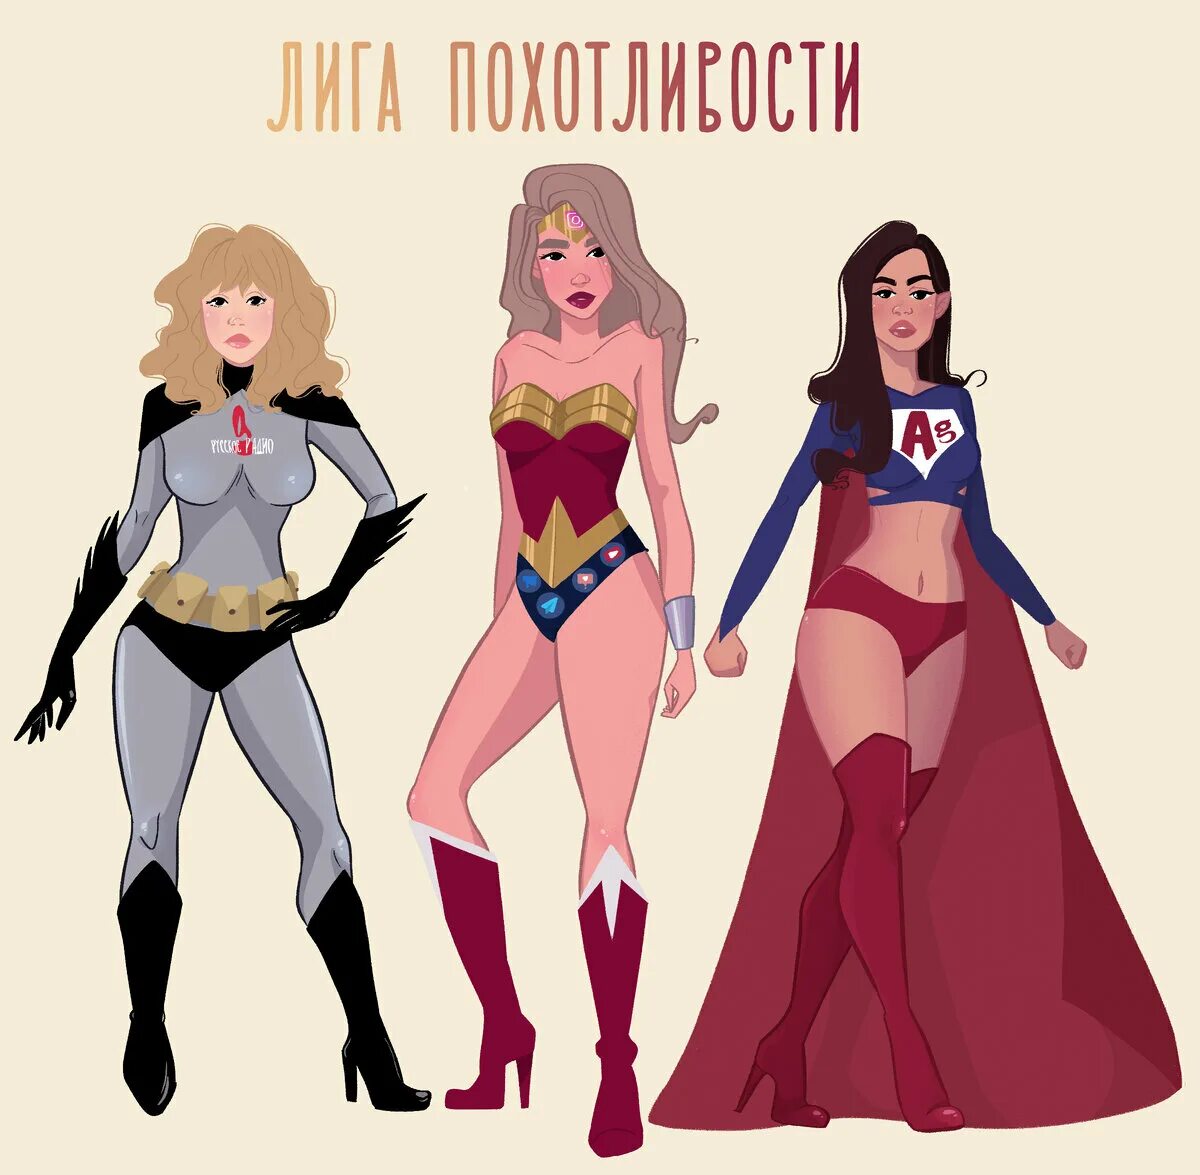 Русские Супергерои. Выдуманные Супергерои. Русские Супергерои придуманные в России. Русские герои комиксов